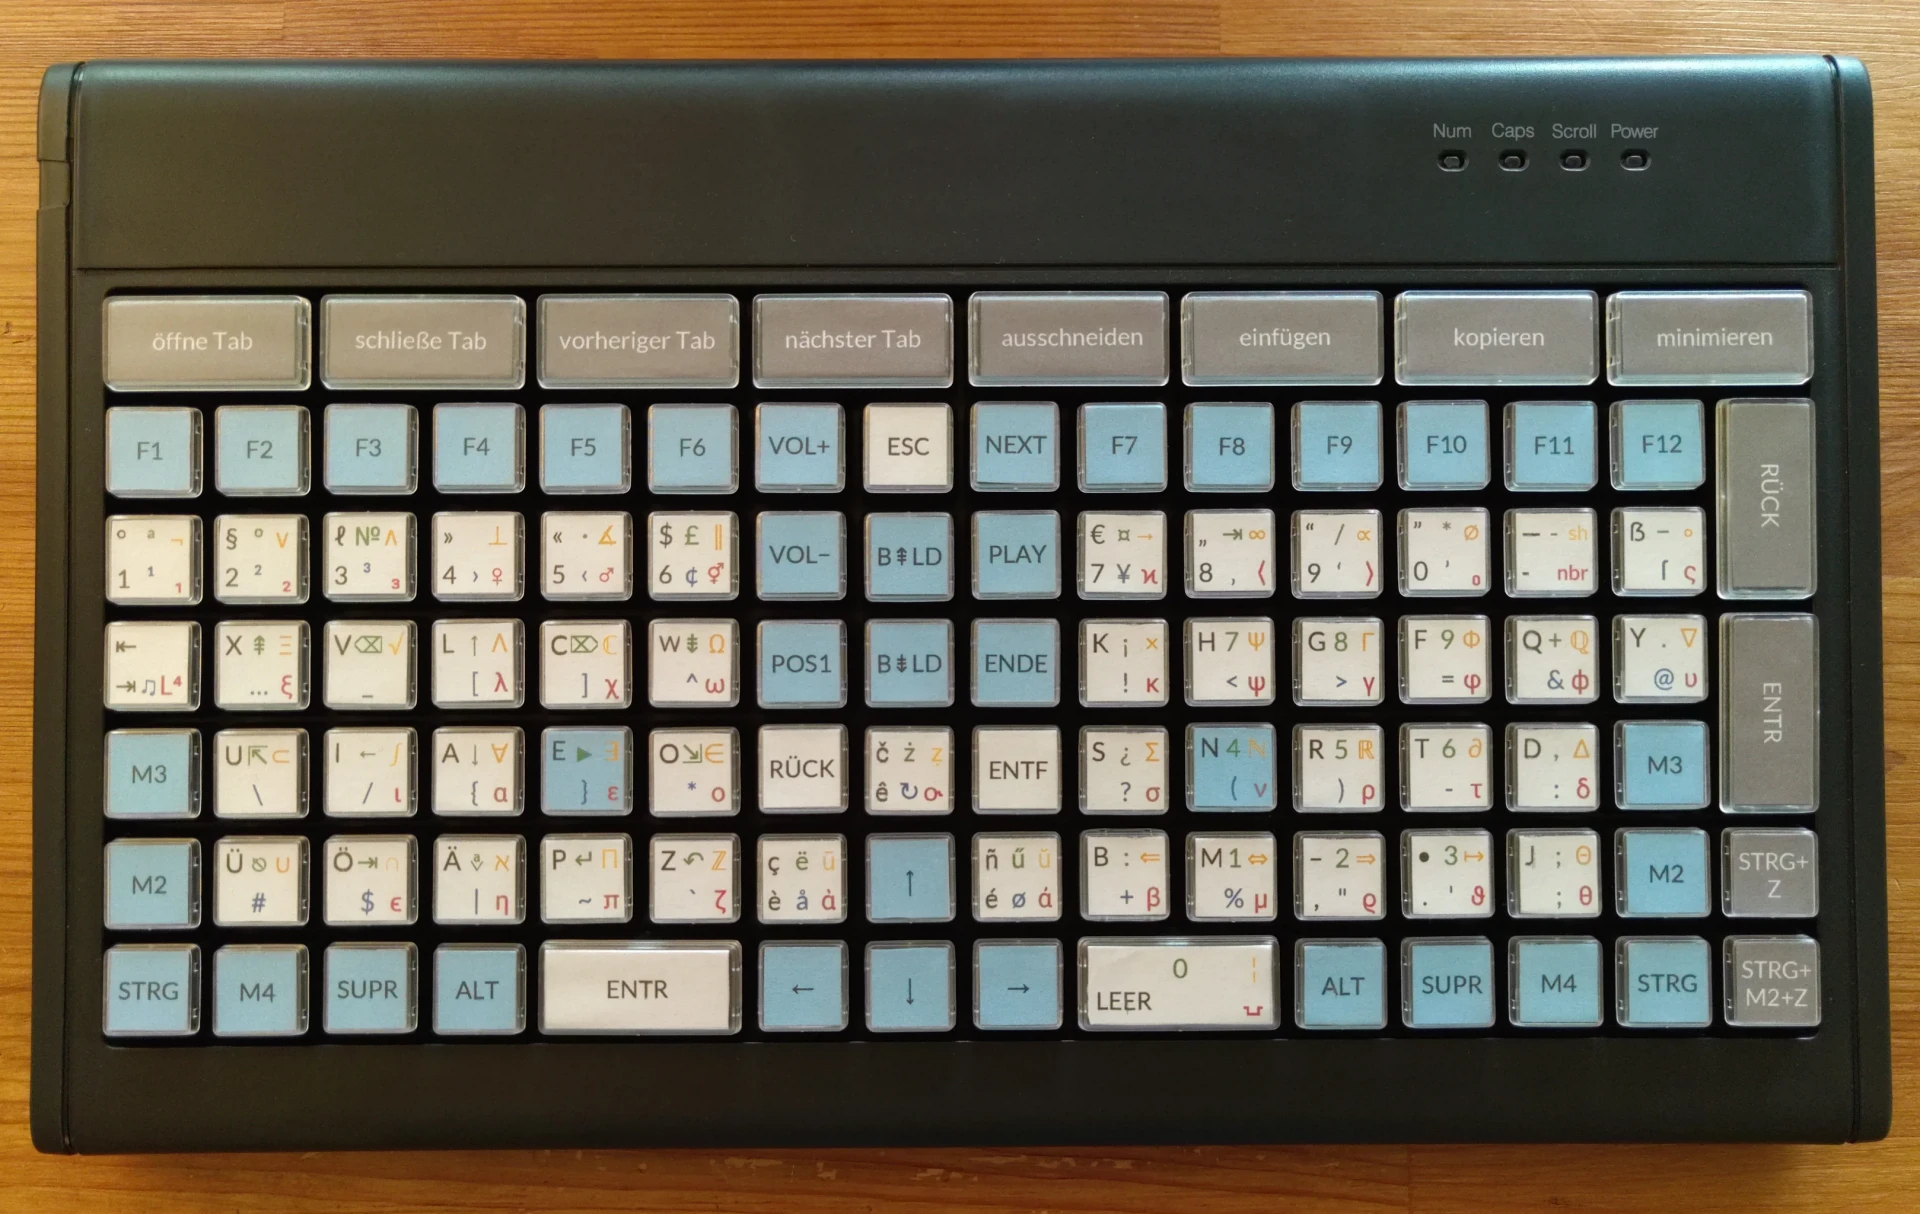 Ortholineare Tastatur mit einer 16x7 Tastenmatrix und Beschriftung für die sechs Ebenen des Neo Layouts sowie einigen Makro-Tasten.